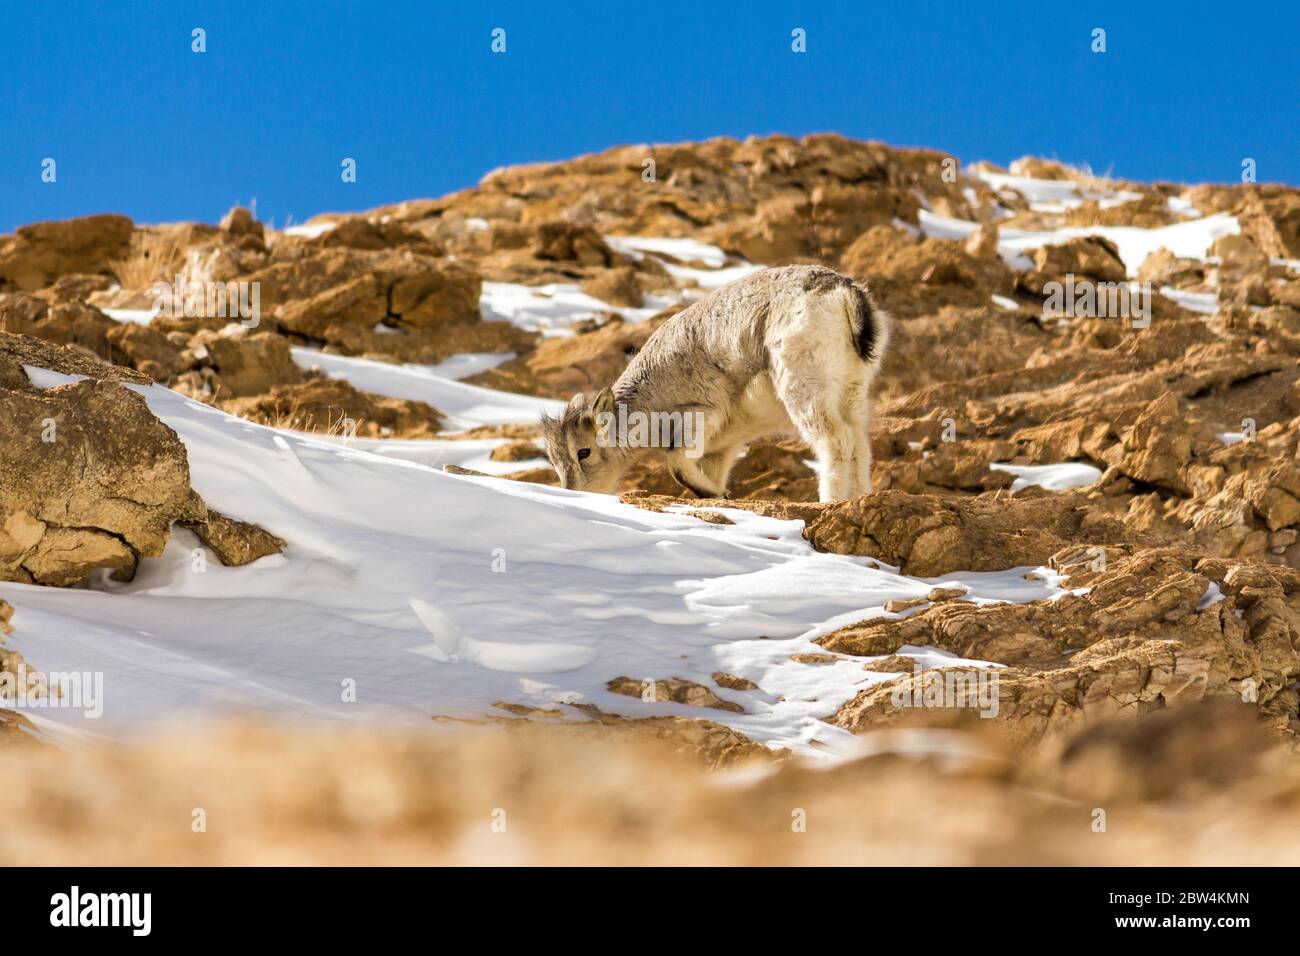 Die bharal oder Himalaya blauen Schafe oder naur (Pseudois nayaur) ist ein caprid in den hohen Himalaya von Ladakh, Indien gefunden. Schneeberge von Ladakh, Indien. Stockfoto